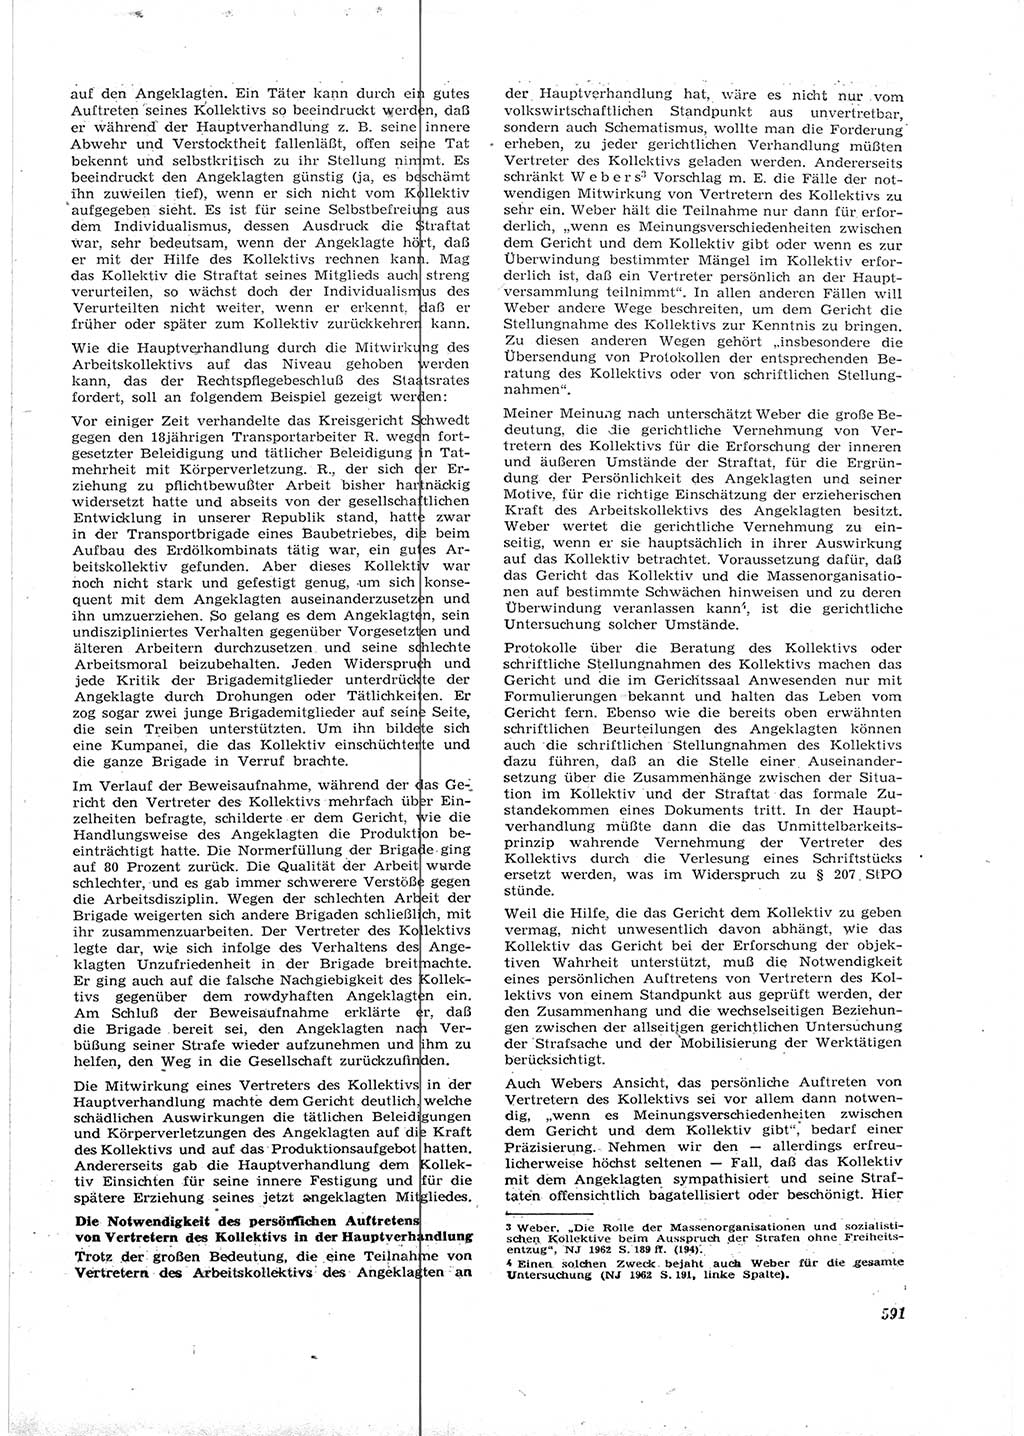 Neue Justiz (NJ), Zeitschrift für Recht und Rechtswissenschaft [Deutsche Demokratische Republik (DDR)], 16. Jahrgang 1962, Seite 591 (NJ DDR 1962, S. 591)